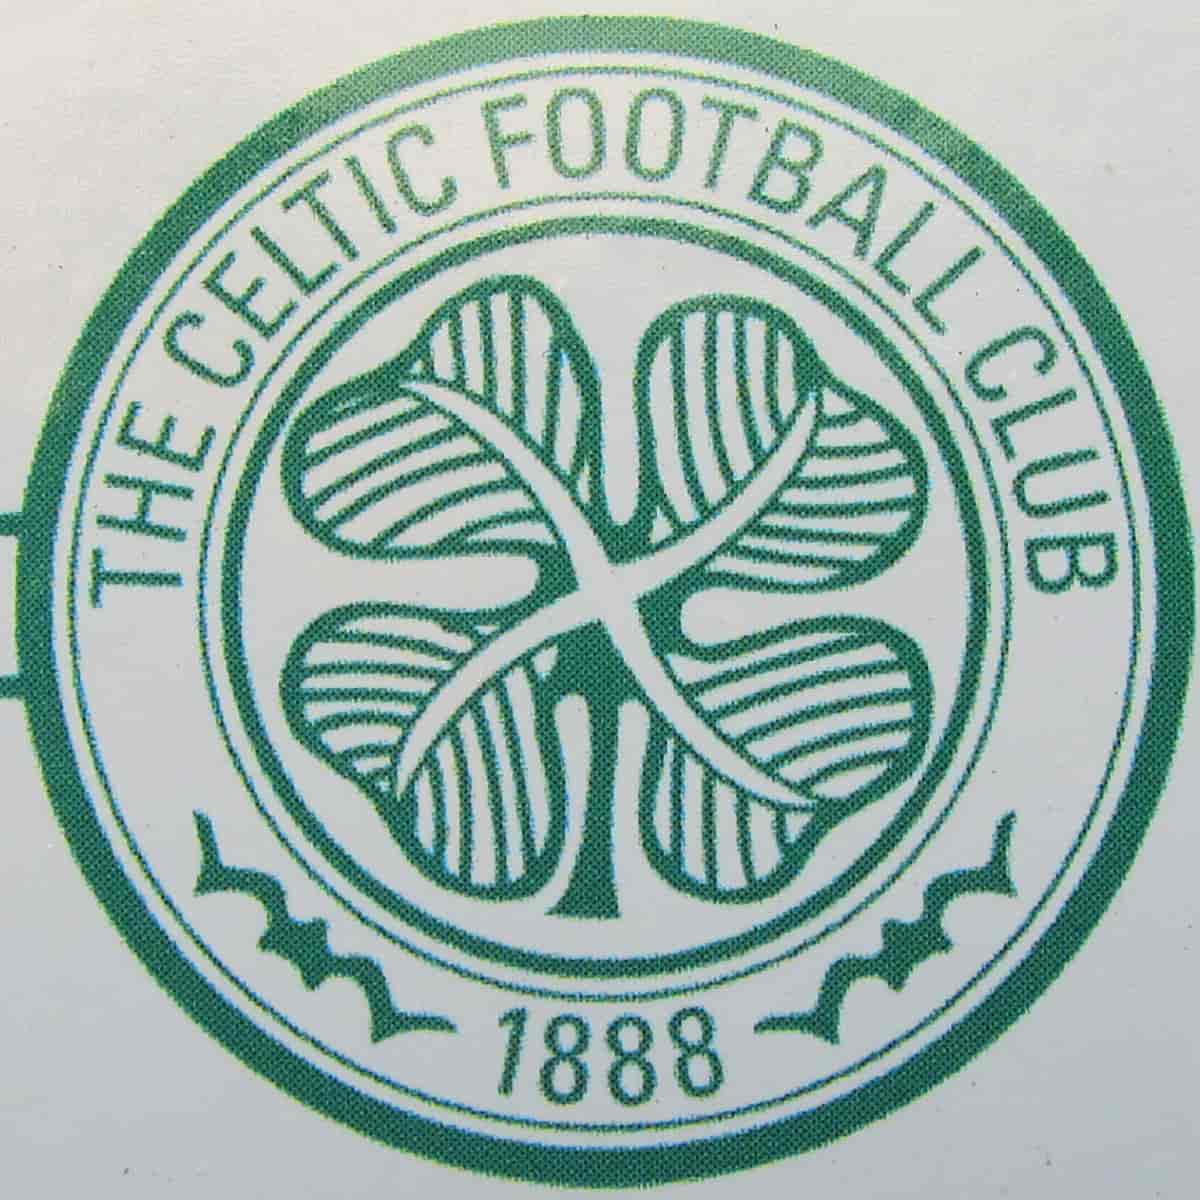 Celtic FC's logo